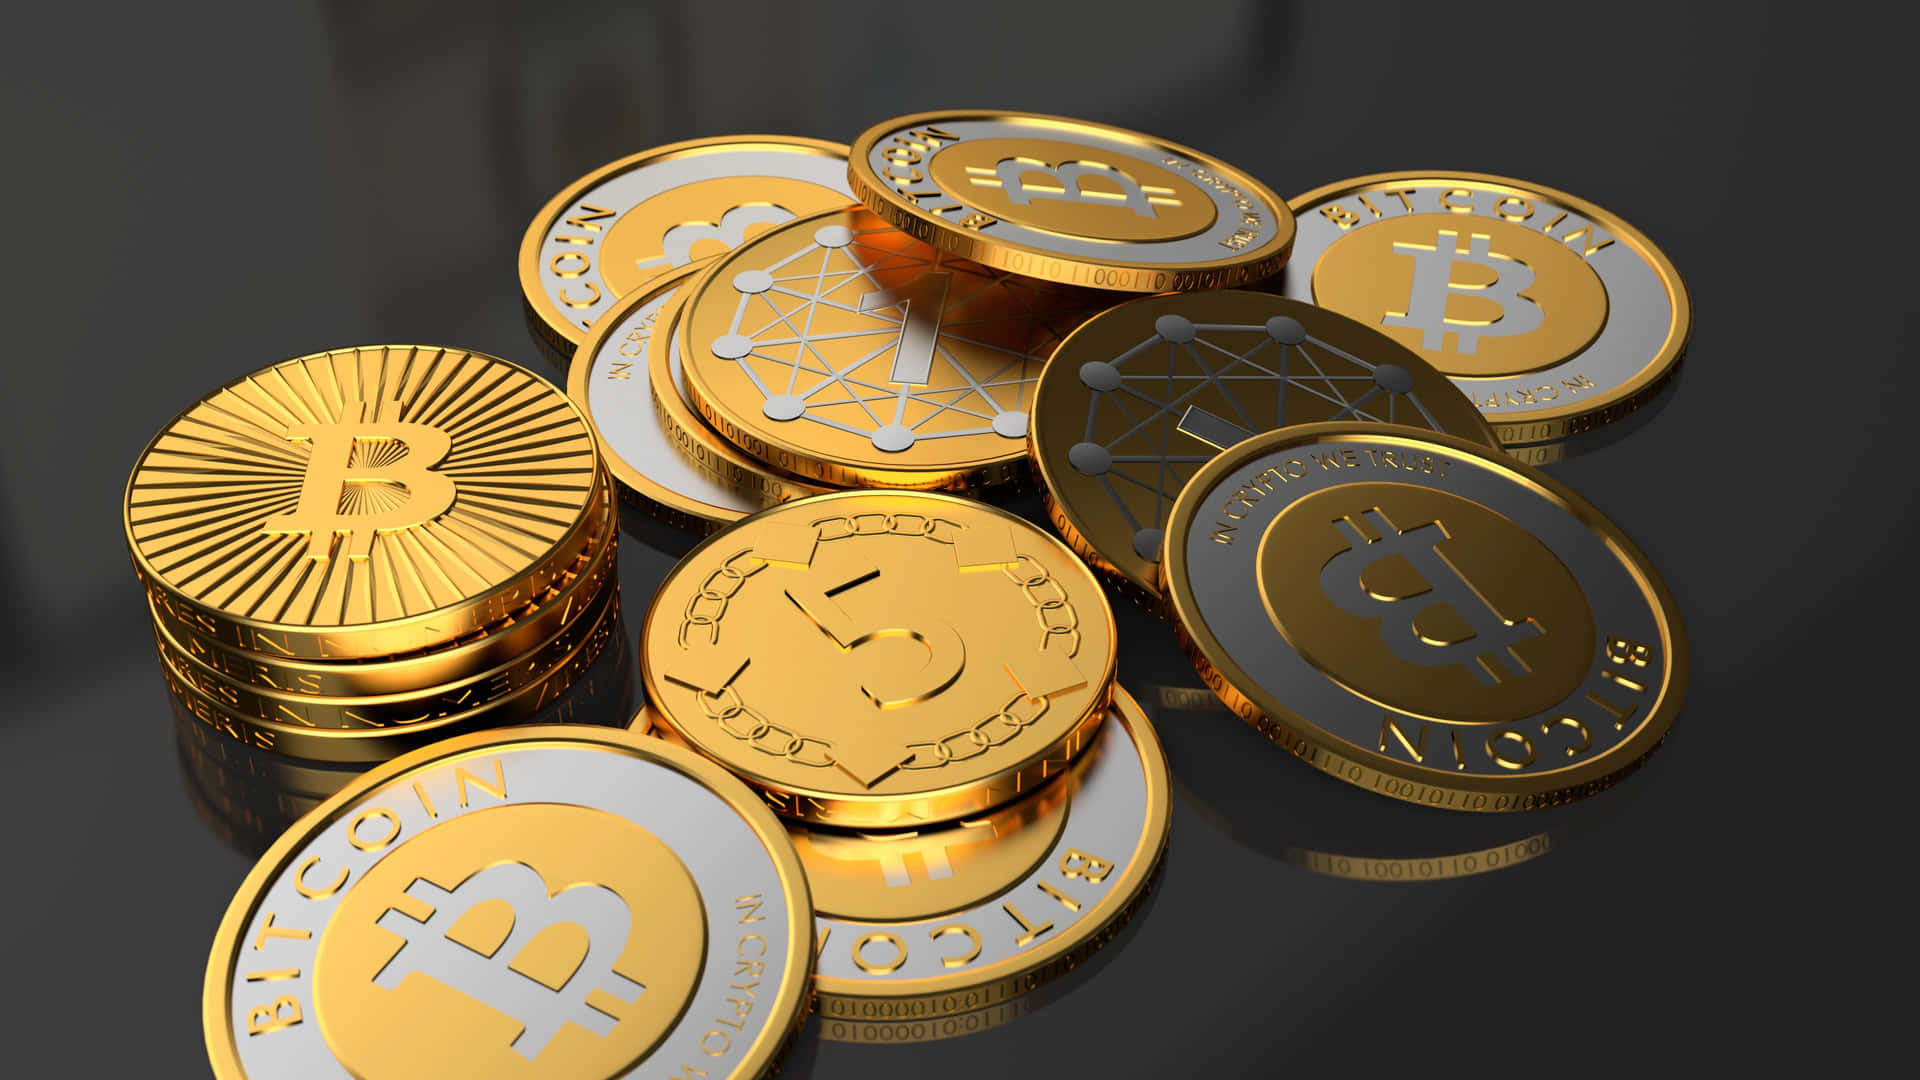 Investierein Aufstrebende Kryptowährungen - 4k Bitcoin Wallpaper